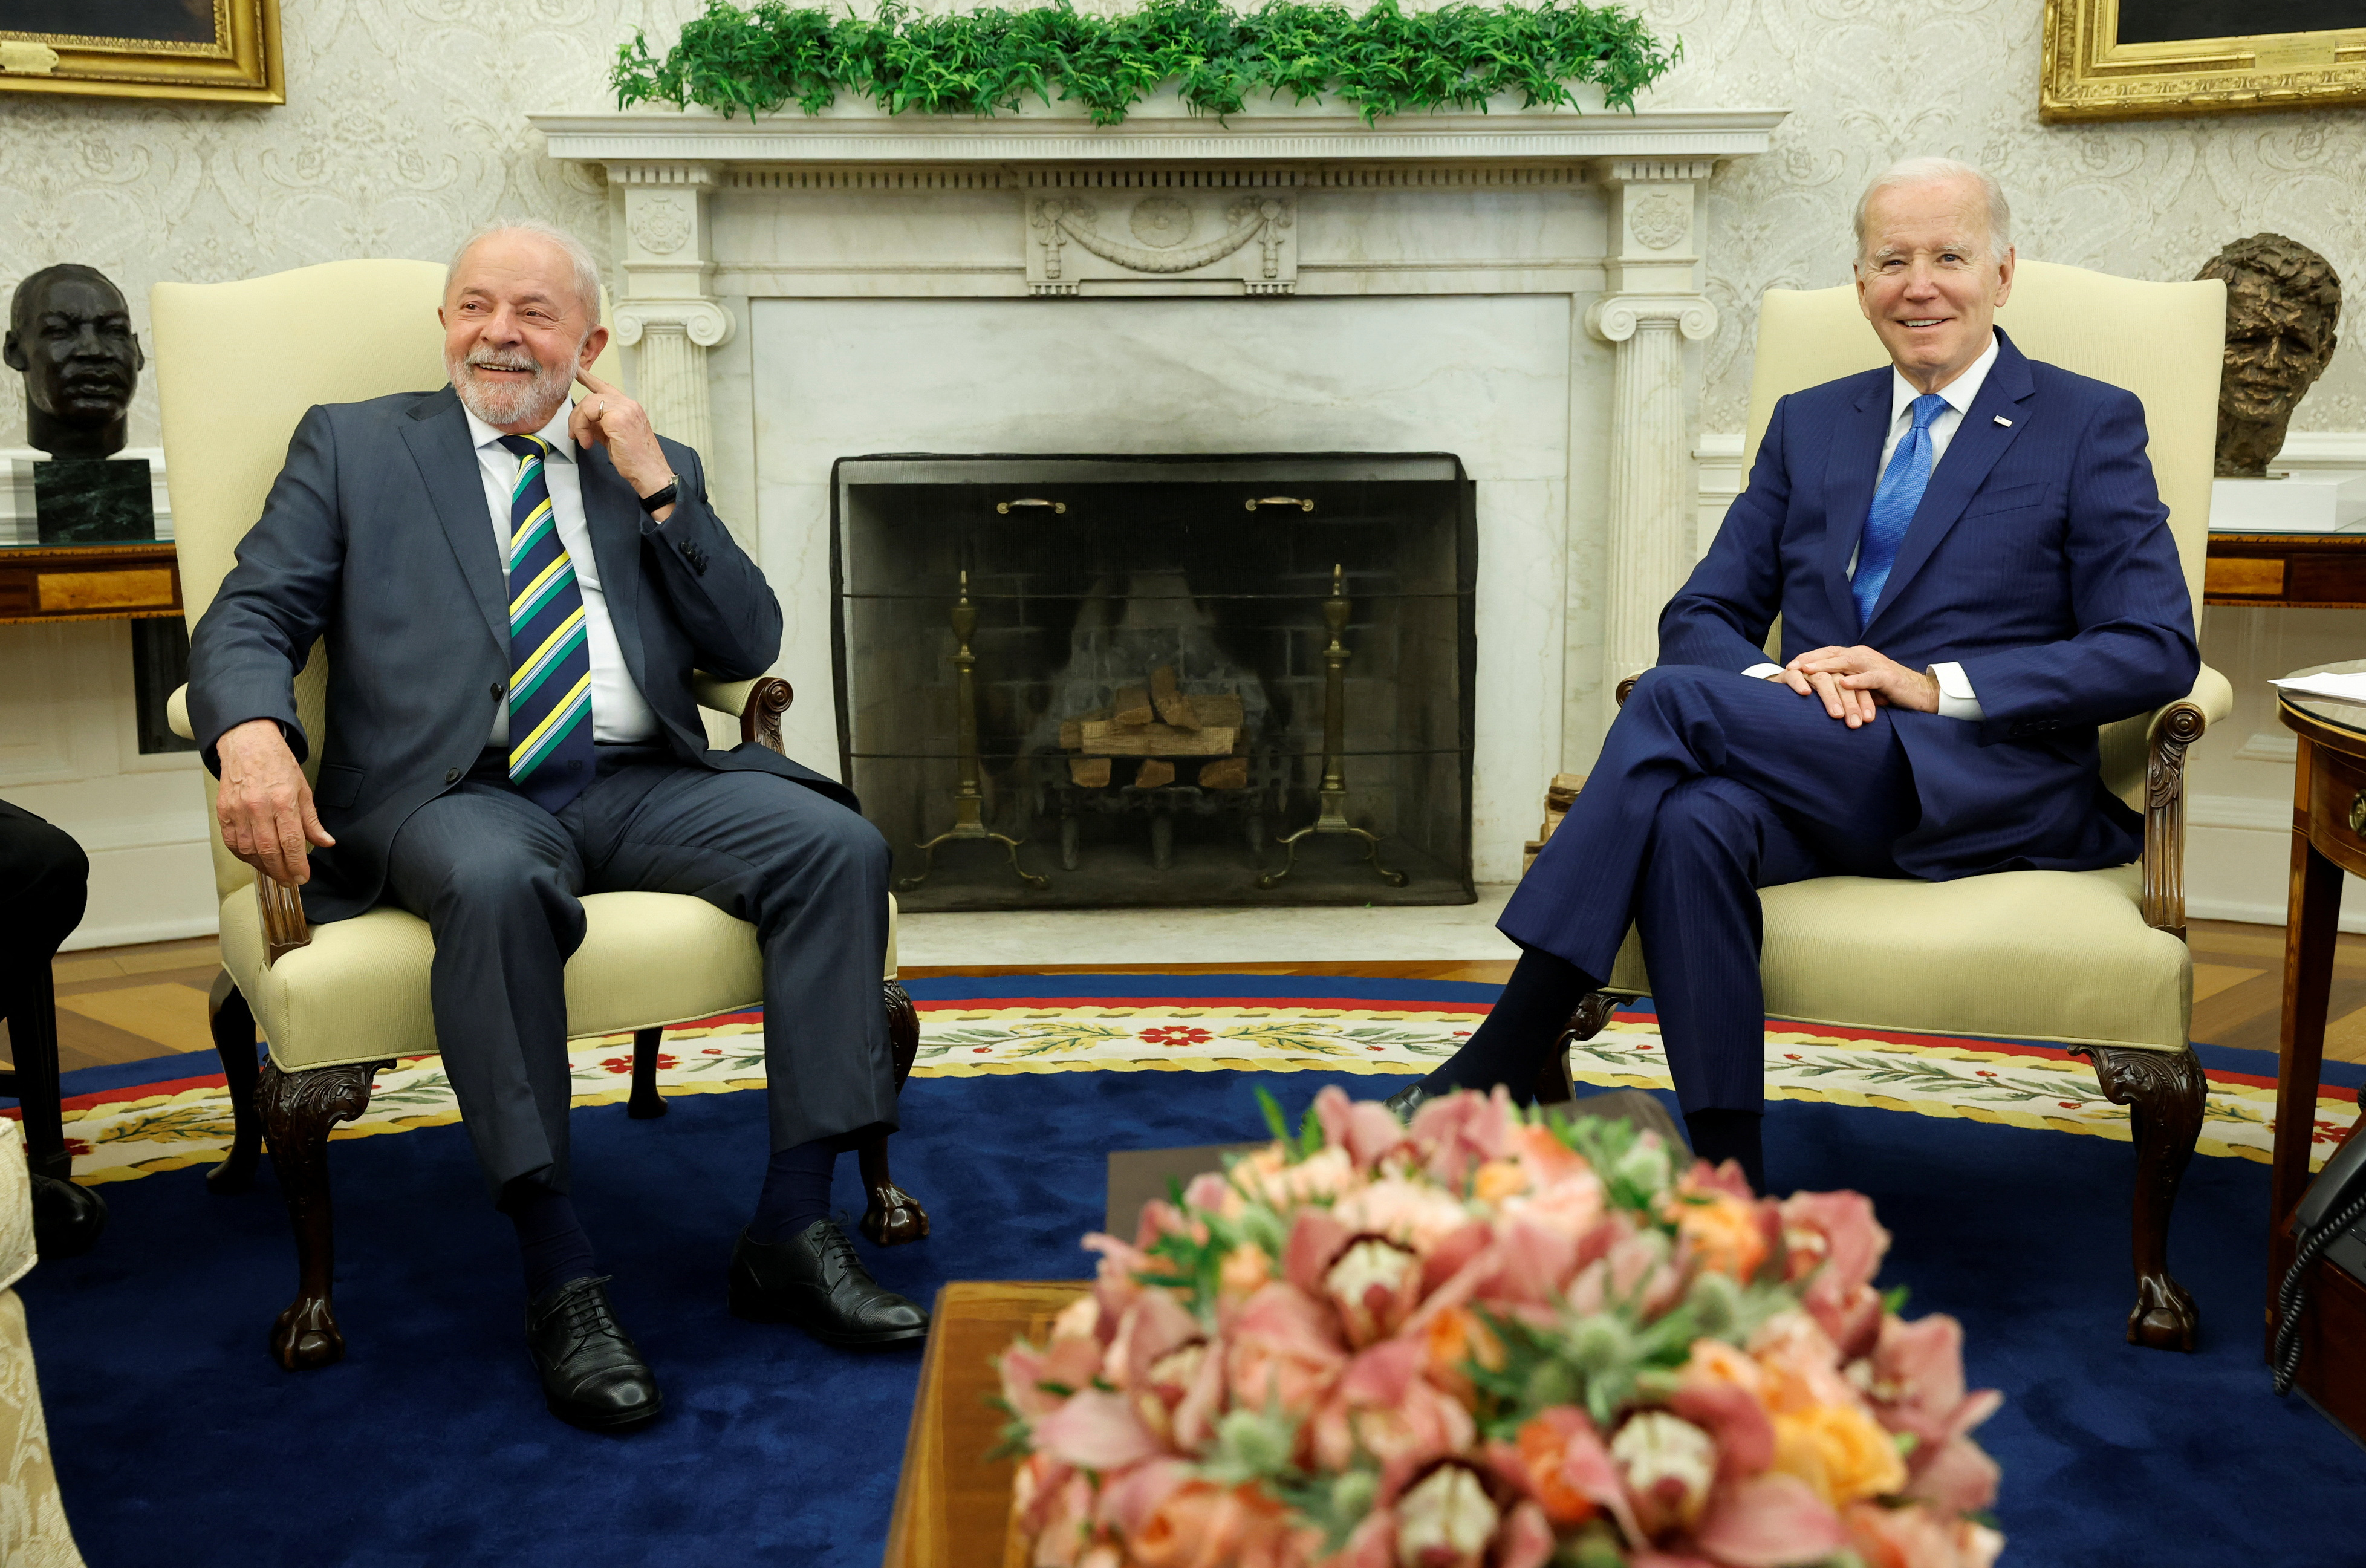 El presidente estadounidense Joe Biden y el presidente brasileño Luiz Inacio Lula da Silva se reúnen en el Despacho Oval de la Casa Blanca (Reuters)